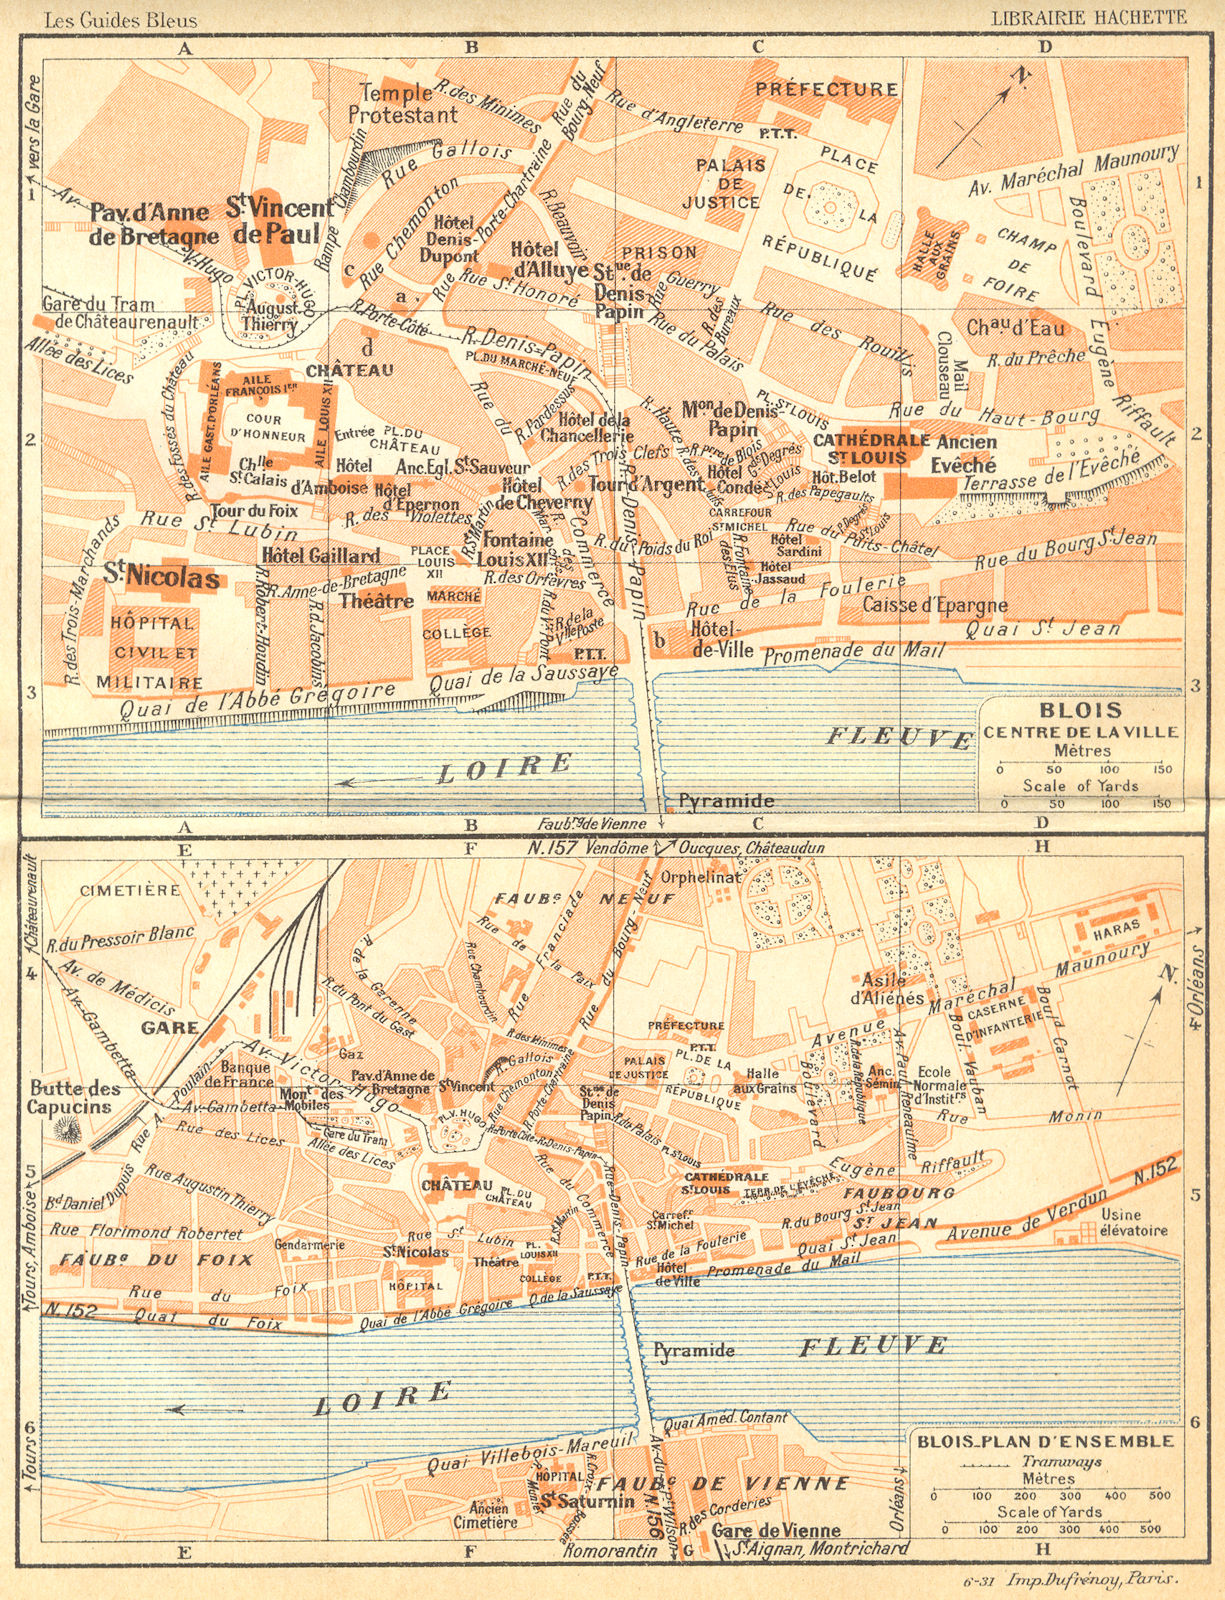 Associate Product FRANCE. Blois Centre de Ville; -plan d'Ensemble 1932 old vintage map chart